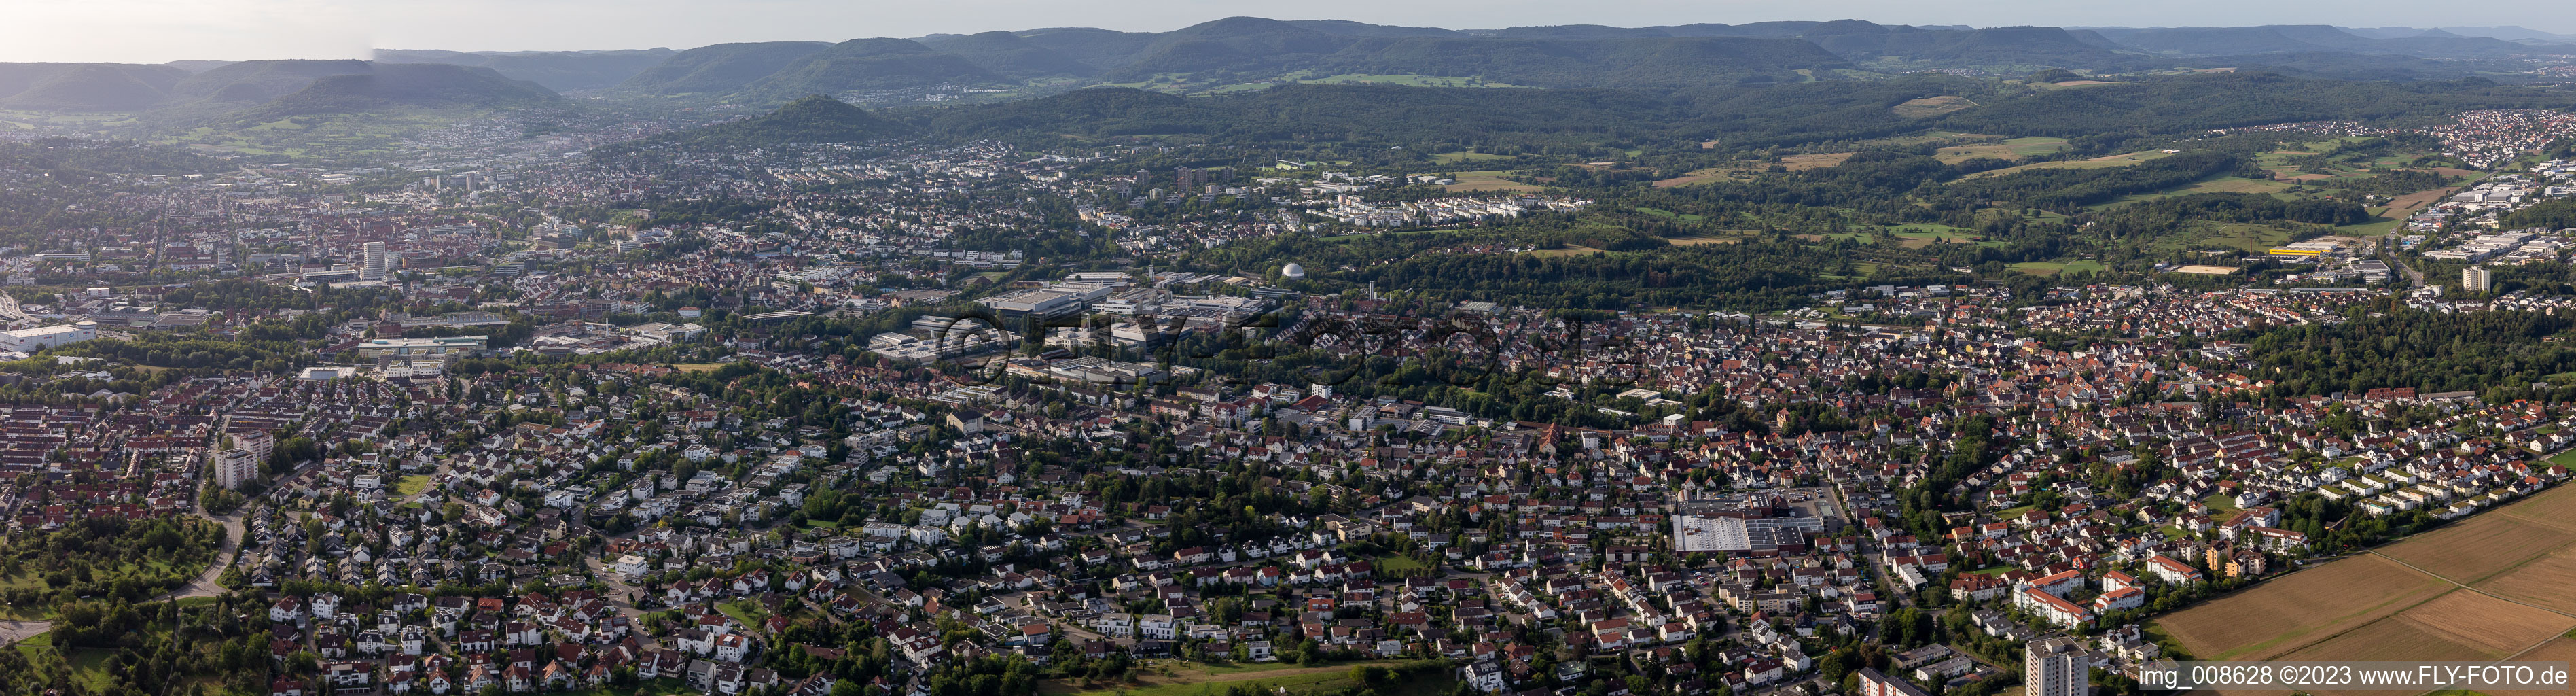 Panorama der schwäbischen Alb in Reutlingen im Bundesland Baden-Württemberg, Deutschland